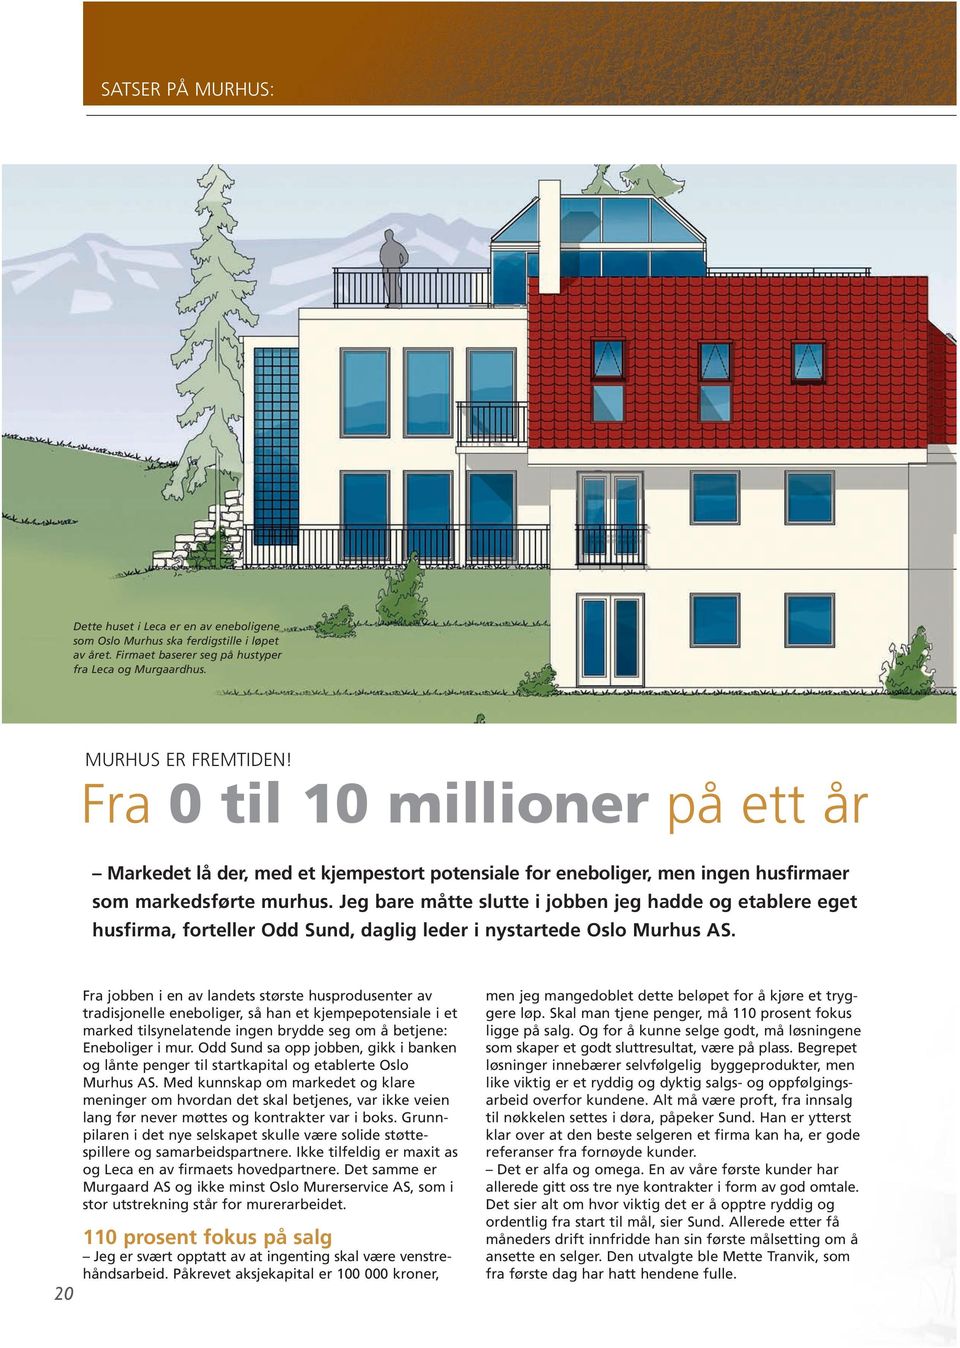 Jeg bare måtte slutte i jobben jeg hadde og etablere eget husfirma, forteller Odd Sund, daglig leder i nystartede Oslo Murhus AS.